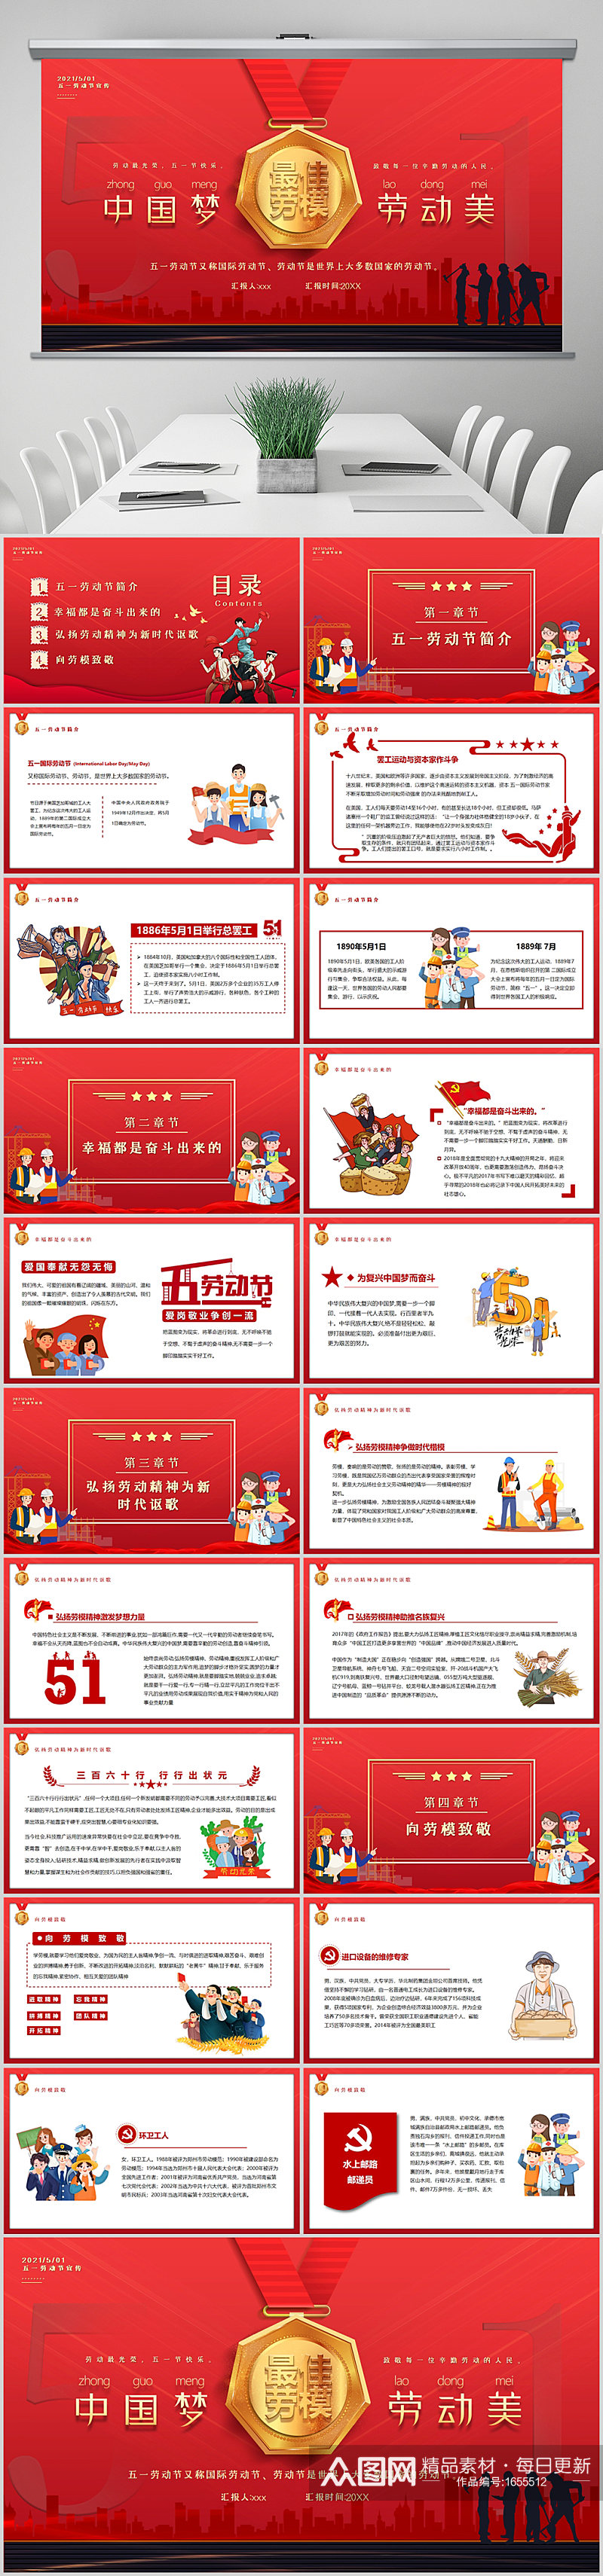 红色卡通风五一劳动节中国梦劳动美动态模版素材